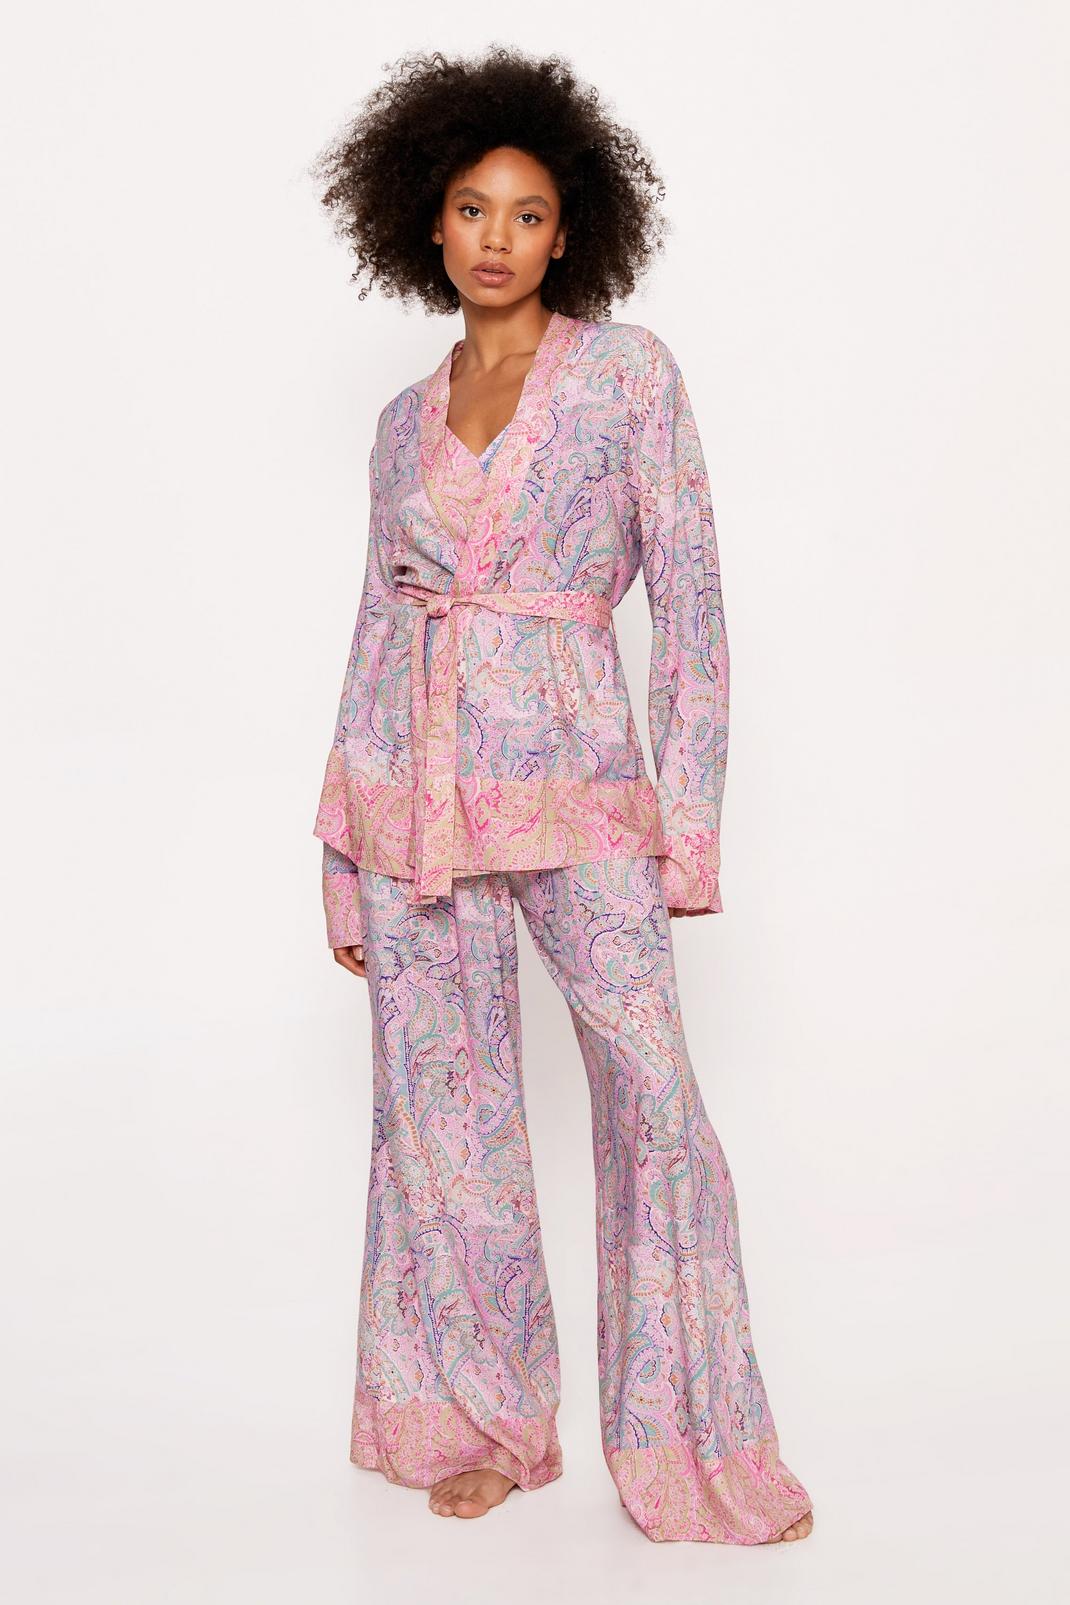 Pyjama imprimé cachemire avec kimono, bralette et pantalon, Pale pink image number 1